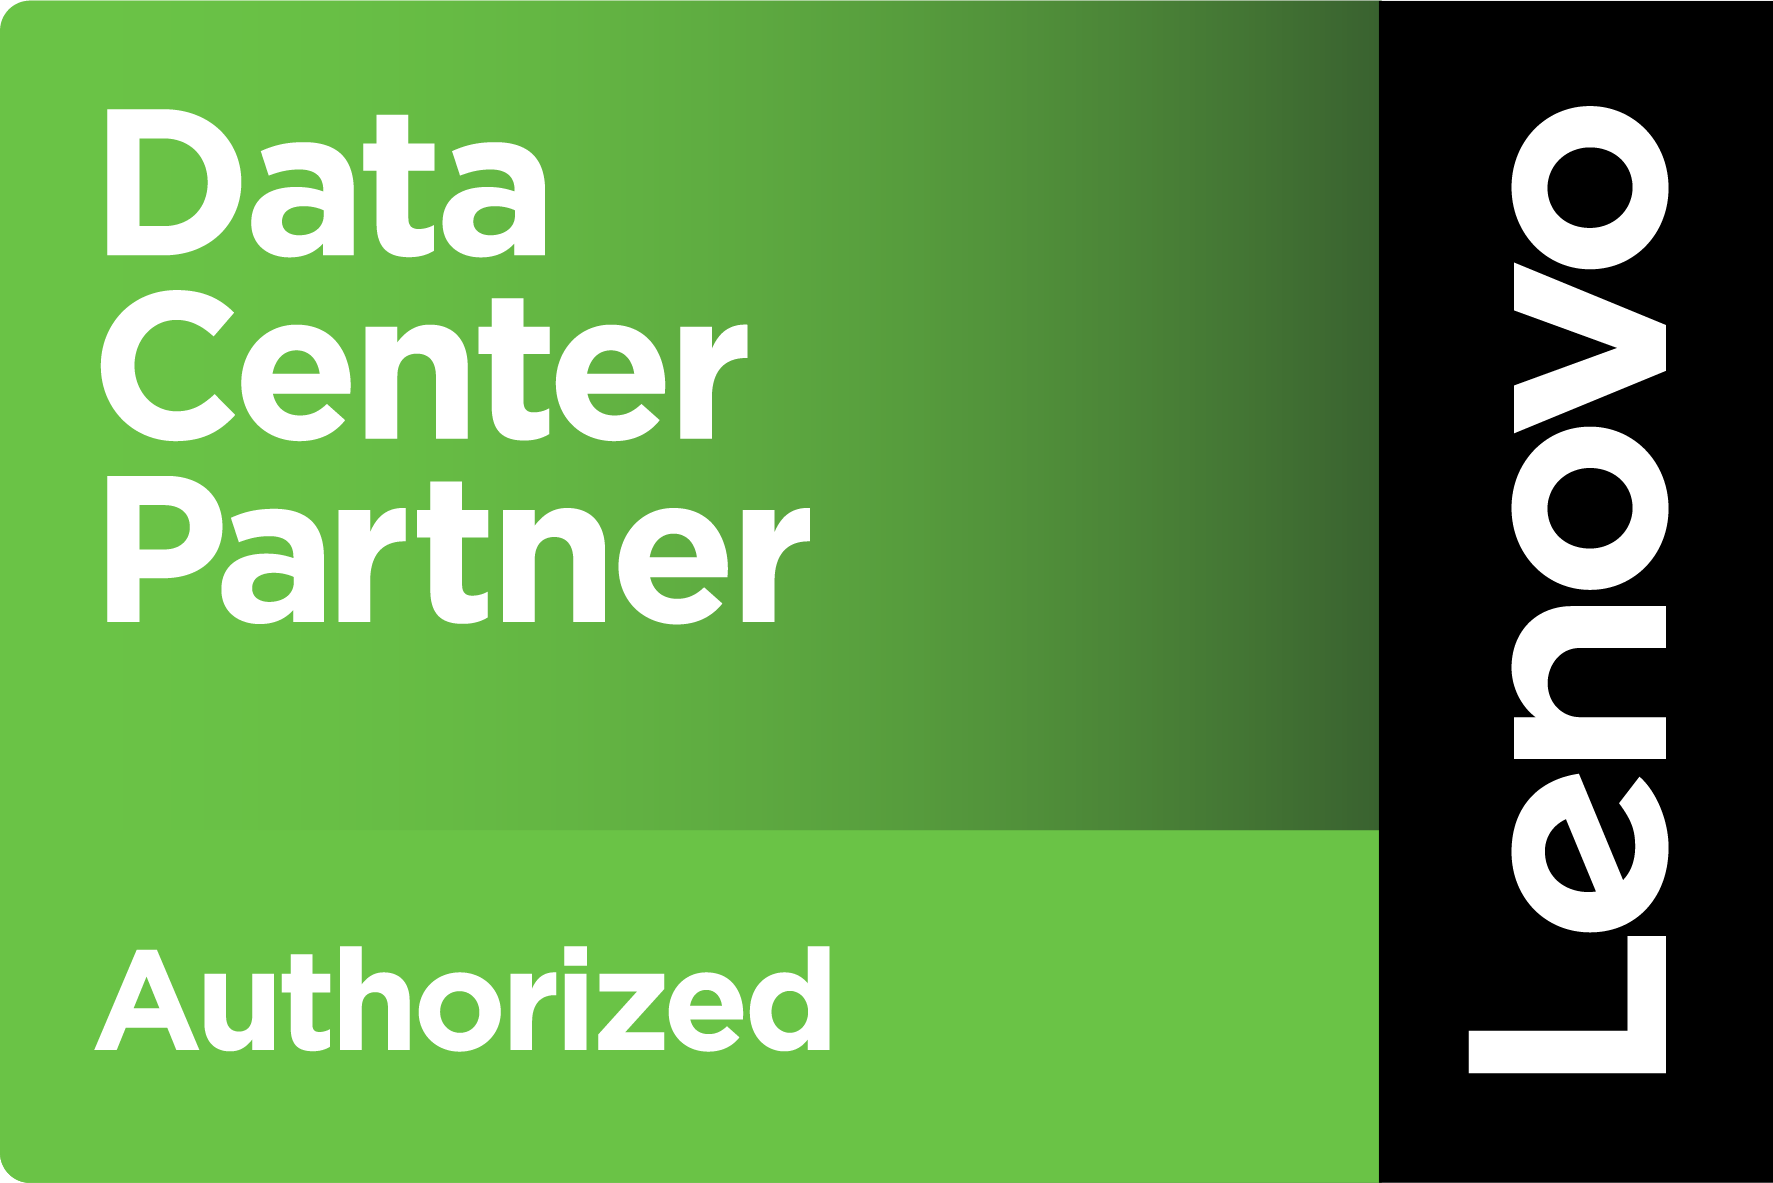 Lenovo Data Center Authorized Partner